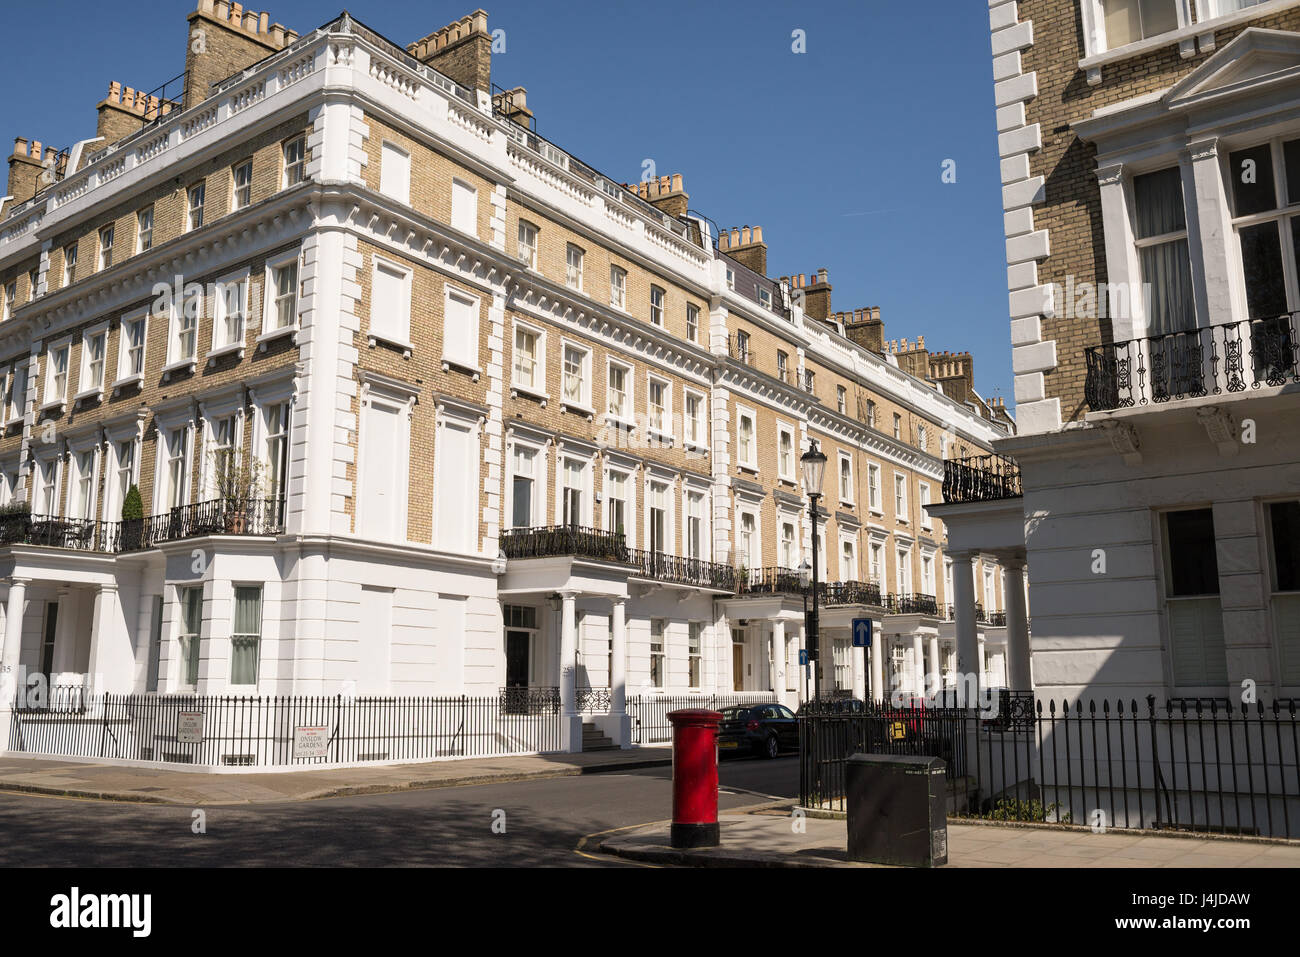 Restauriert von eleganten viktorianischen Edwardian Luxus-Häuser in der exklusiven Gegend von South Kensington, London, UK Stockfoto